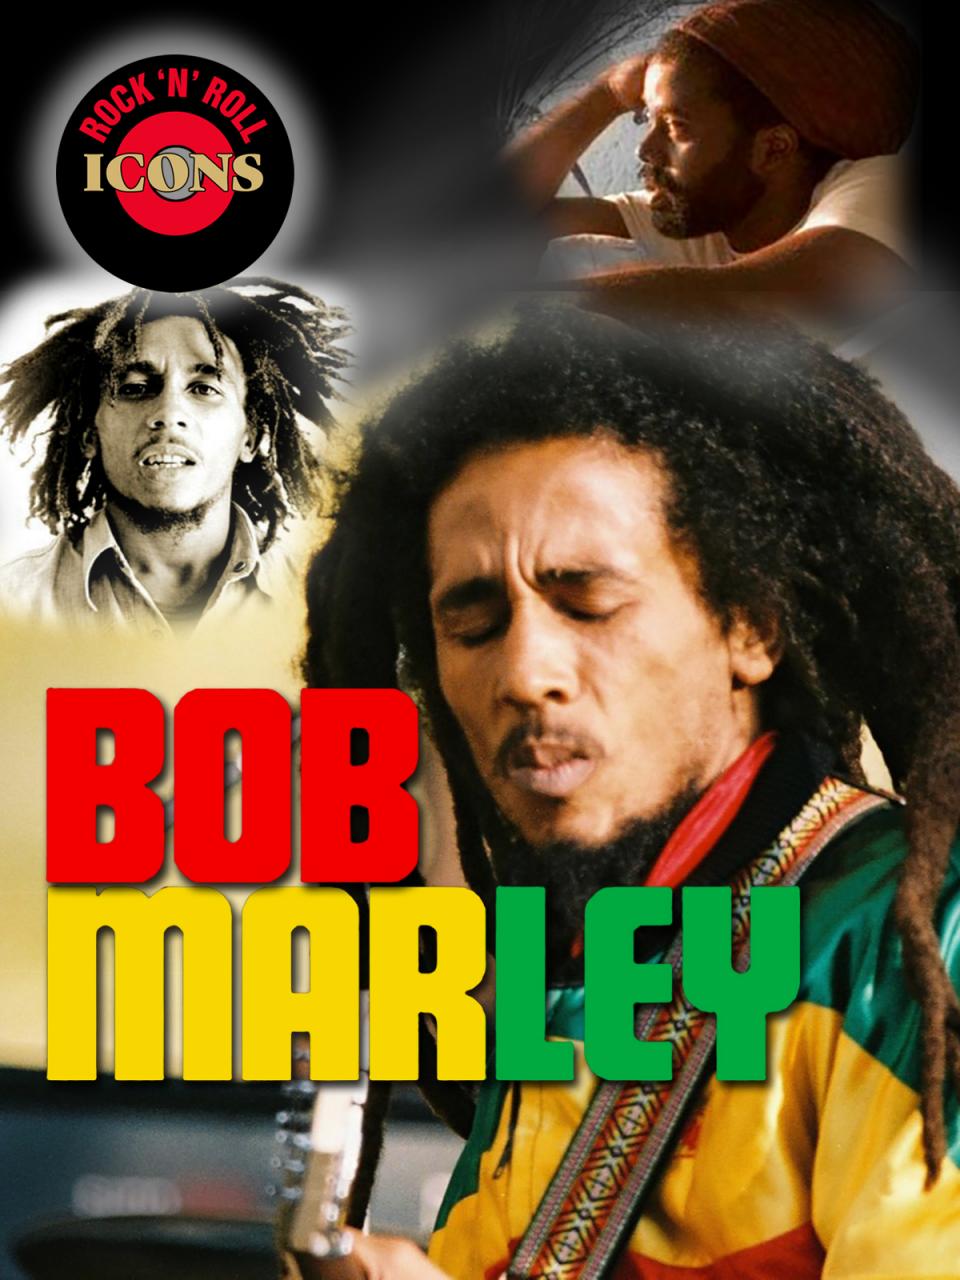 Rock 'n Roll Icons: Bob Marley